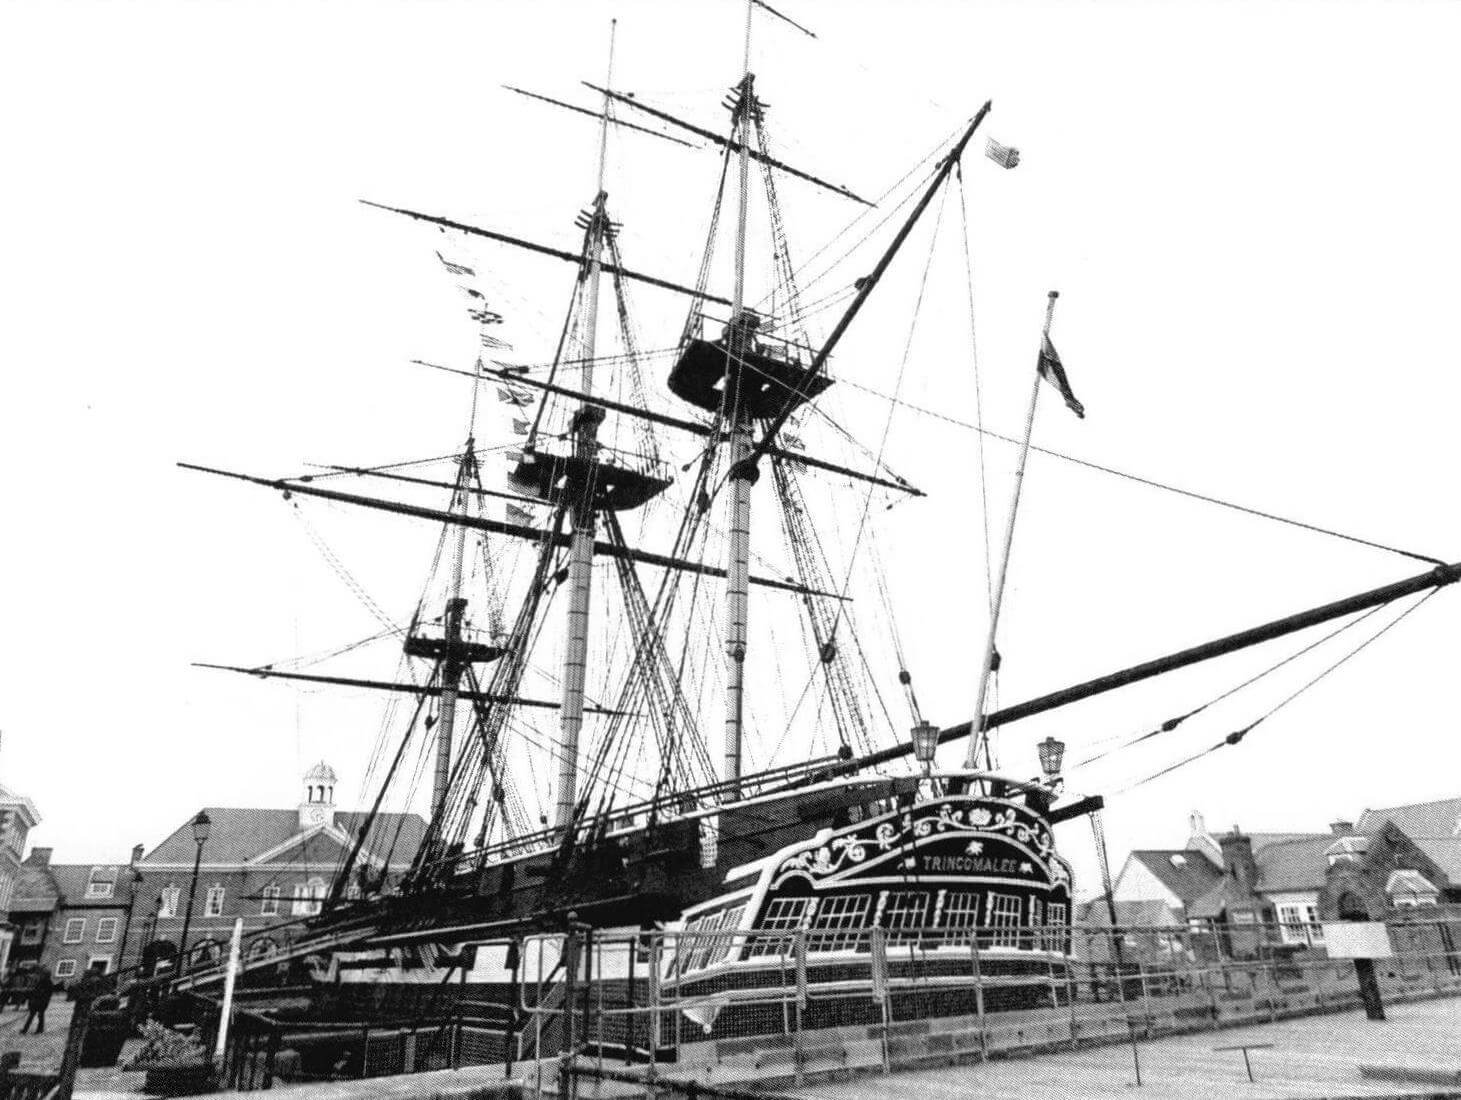 Восстановленный «Тринкомали»- корабль-музей в Хартлепуле